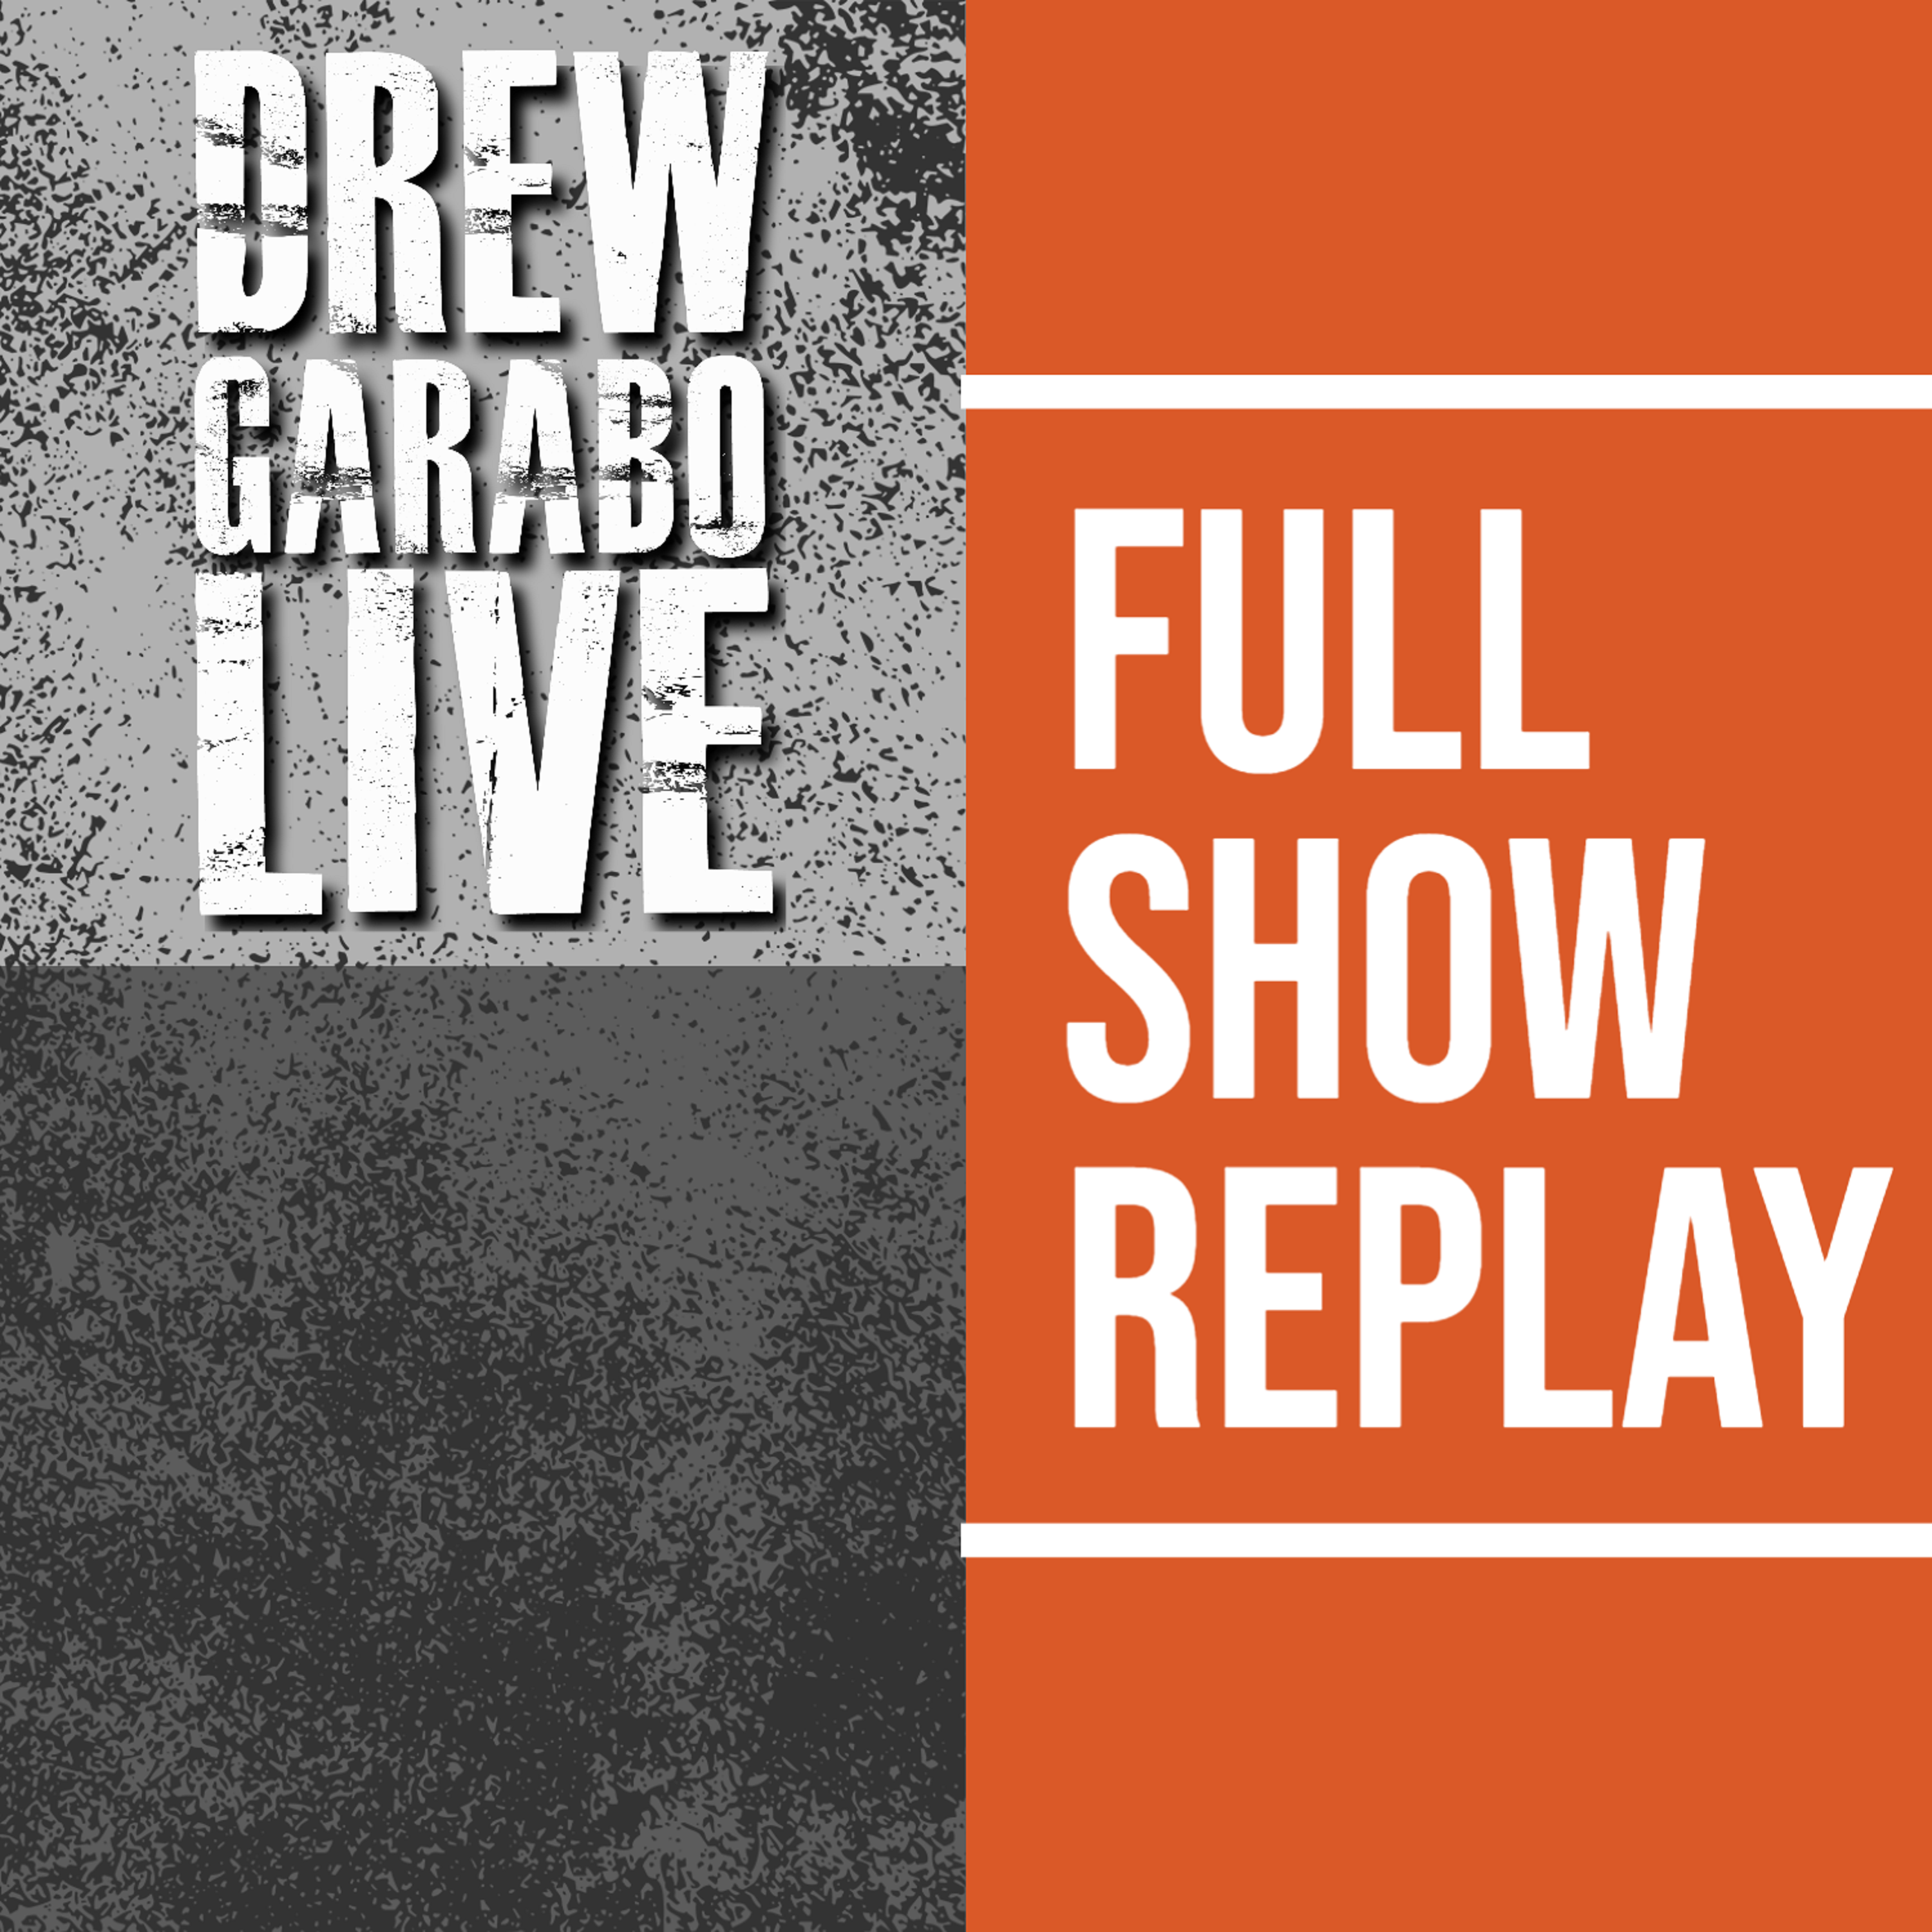 Drew Garabo Live Full Show Replay